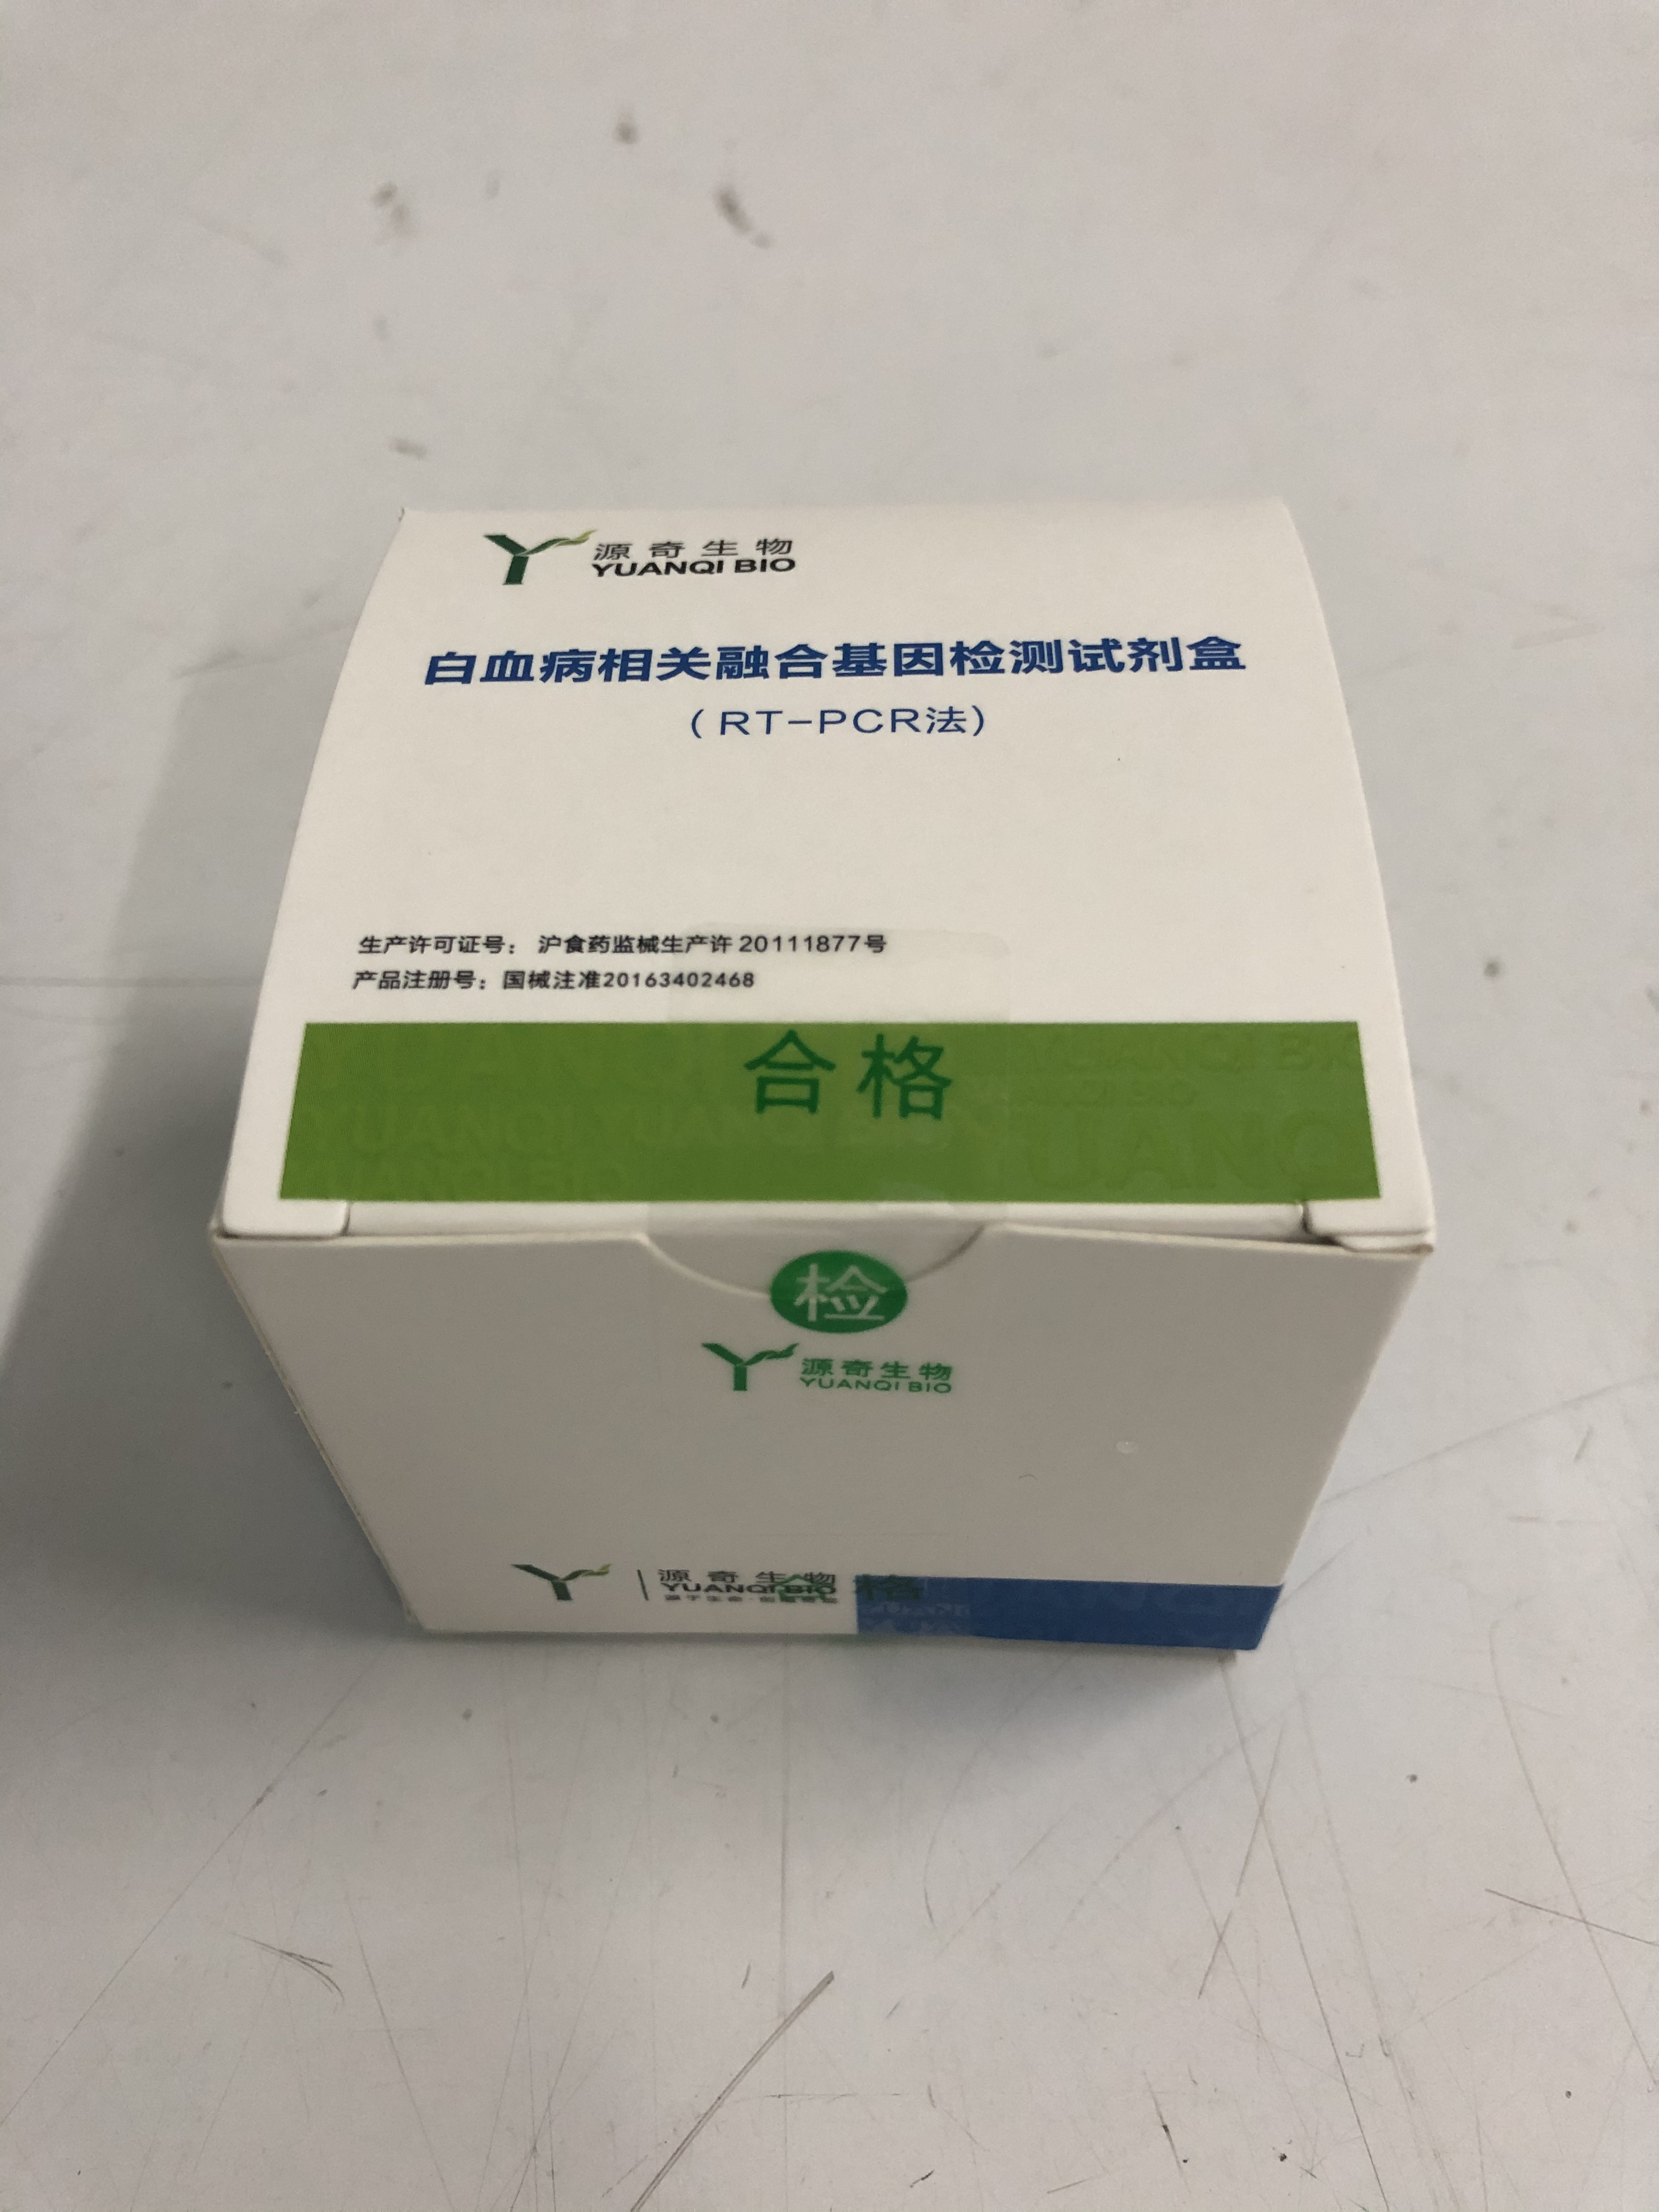 【源奇】白血病相关融合基因检测试剂盒(RT-PCR法)